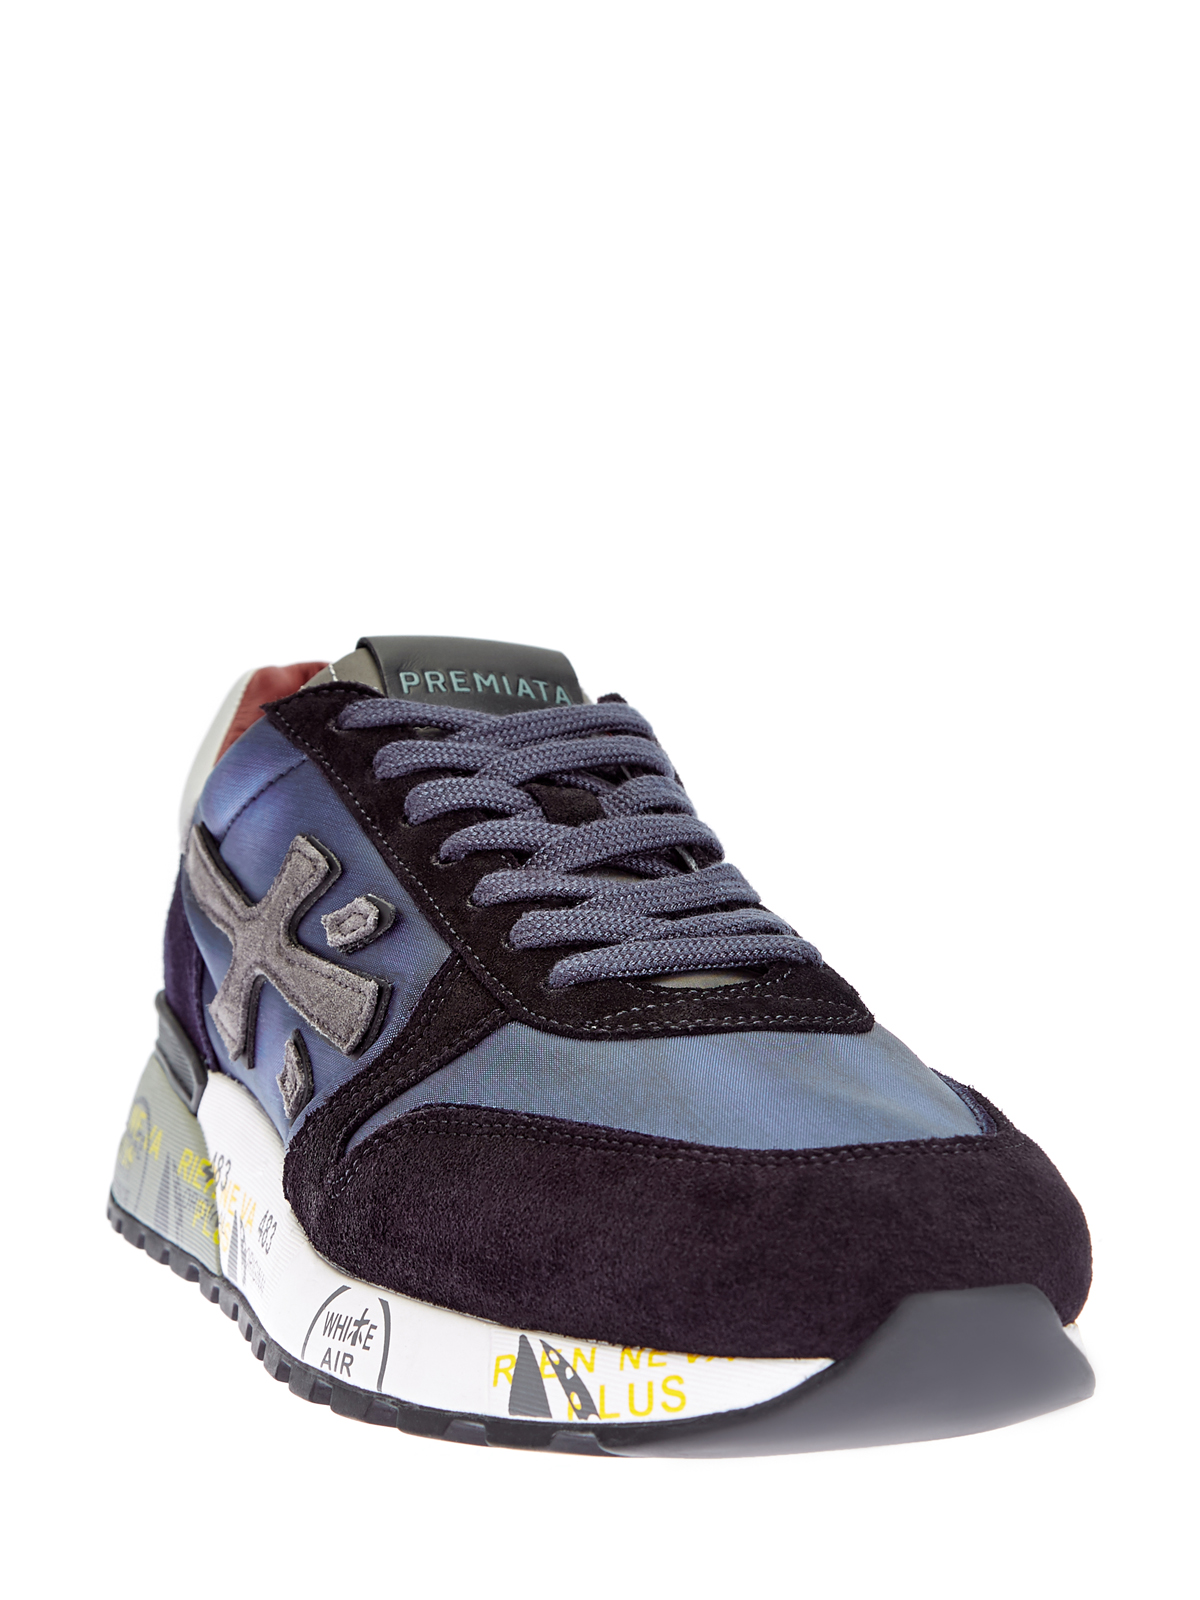 Эргономичные кроссовки Mick с объемным логотипом PREMIATA, цвет мульти, размер 6;7;8;9;10;11 - фото 3